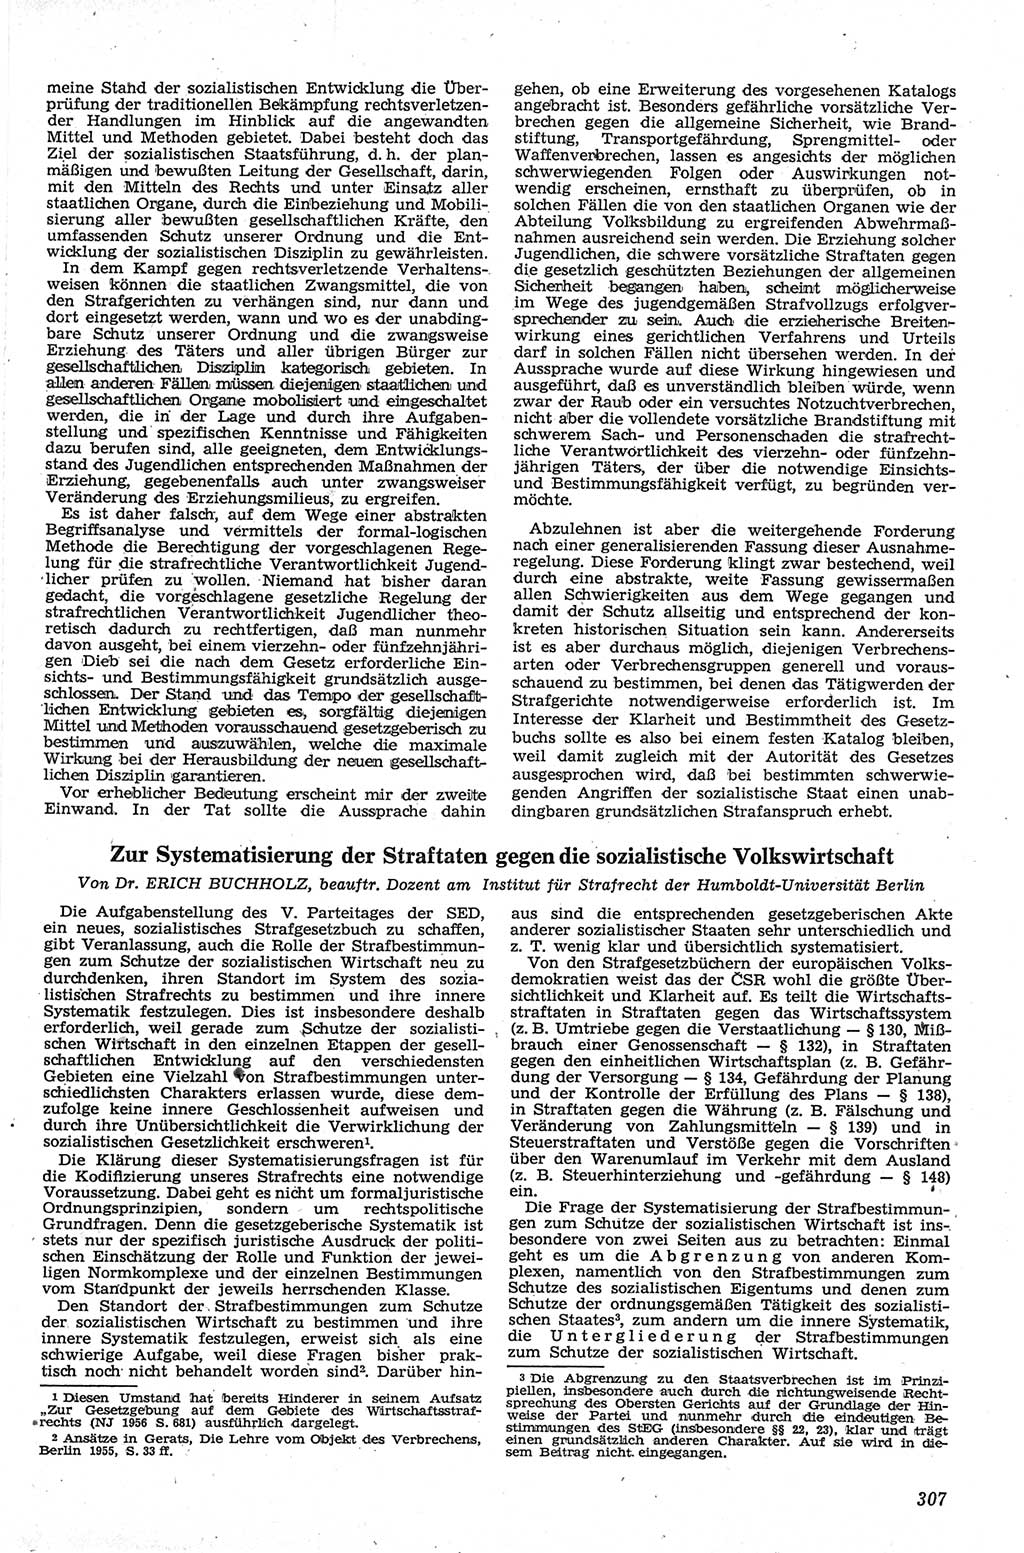 Neue Justiz (NJ), Zeitschrift für Recht und Rechtswissenschaft [Deutsche Demokratische Republik (DDR)], 13. Jahrgang 1959, Seite 307 (NJ DDR 1959, S. 307)